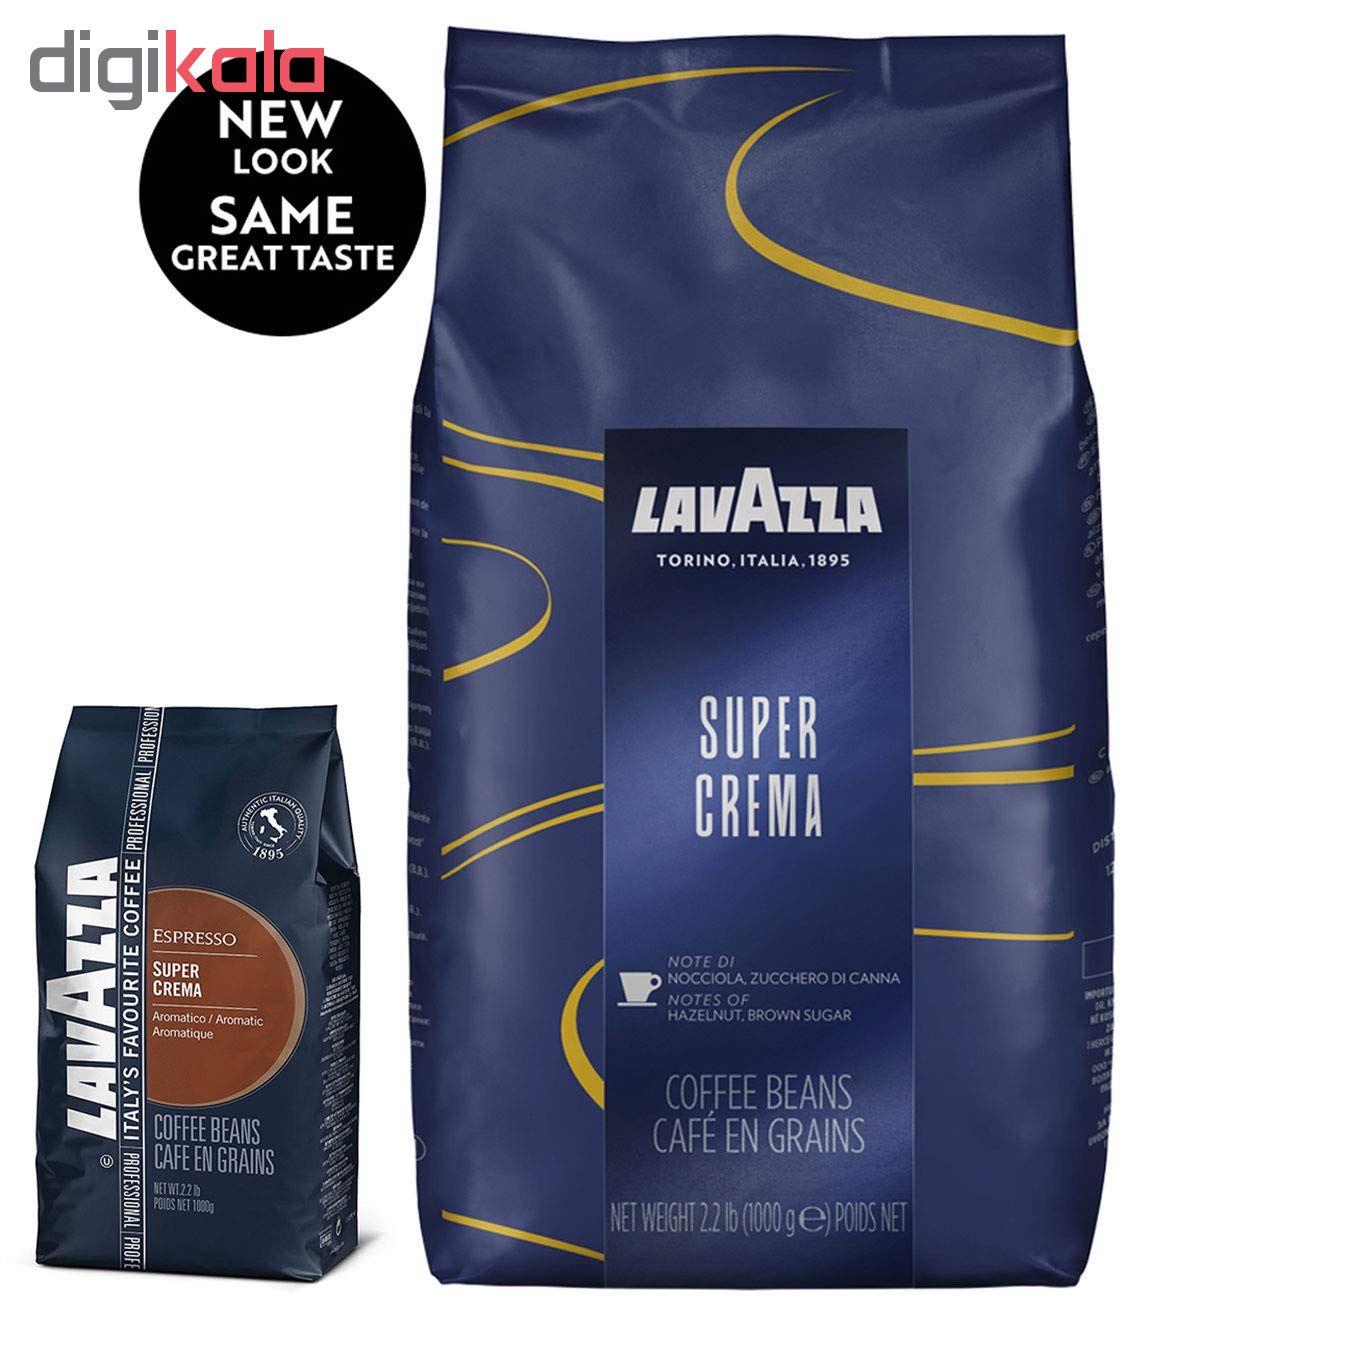 قهوه دانه لاواتزا مدل super crema مقدار 1 کیلوگرم